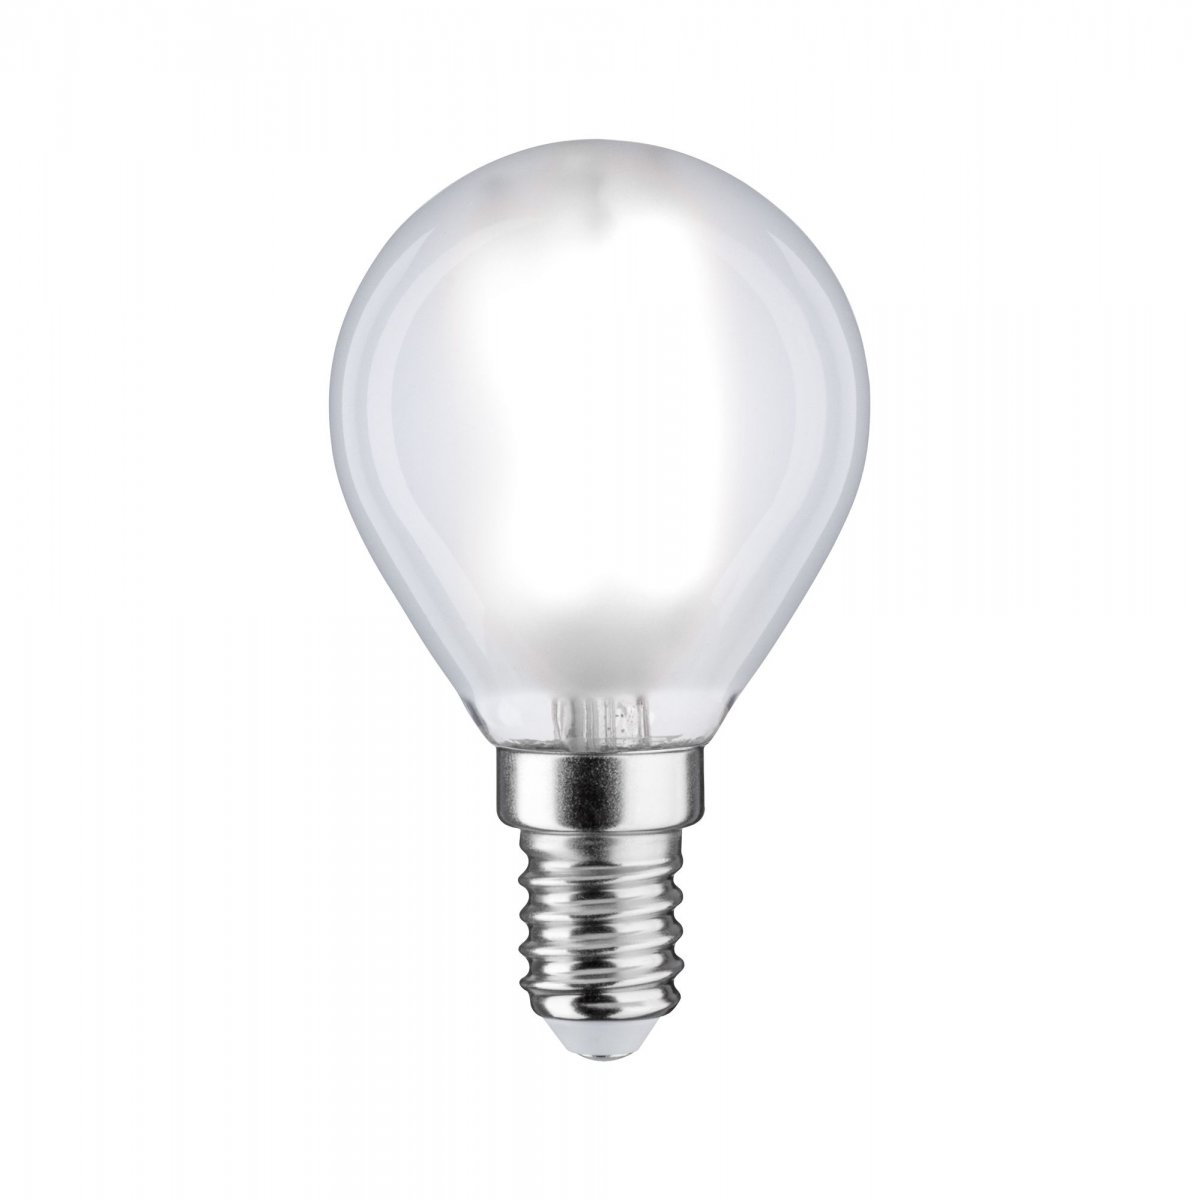 Paulmann No. 28761 LED Tropfen 5 Watt E14 6500K tageslichtweiß dimmbar -->  Leuchten & Lampen online kaufen im Shop light